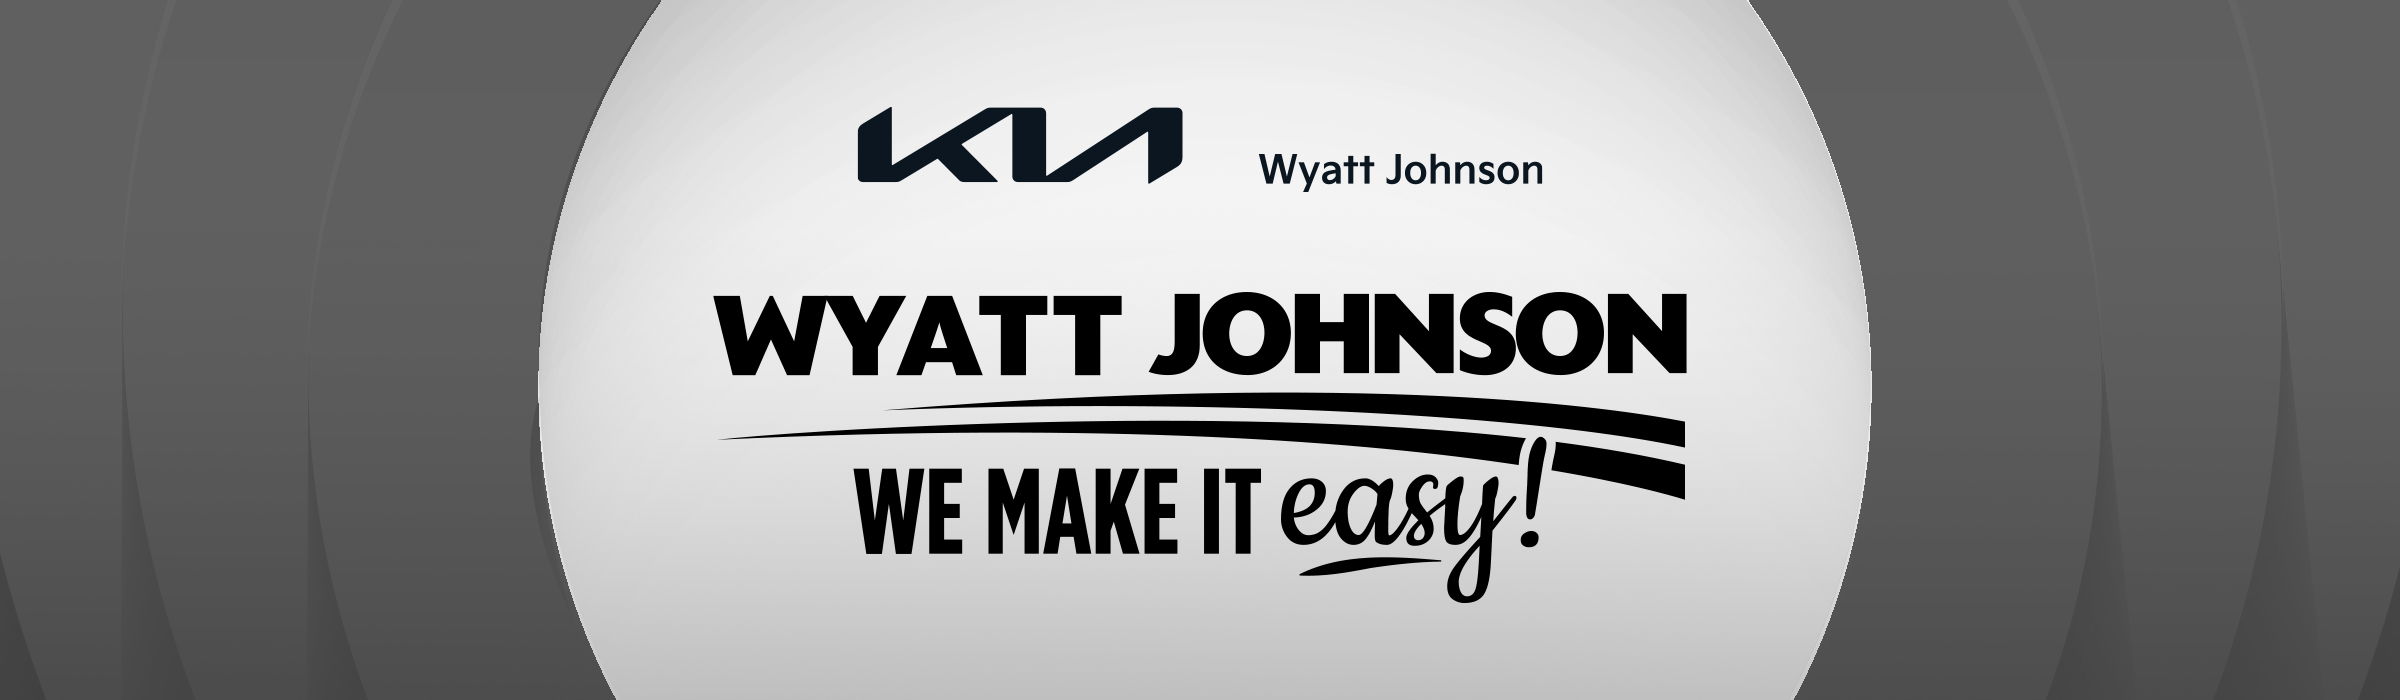 Wyatt Johnson Kia We Make It Easy! Logo